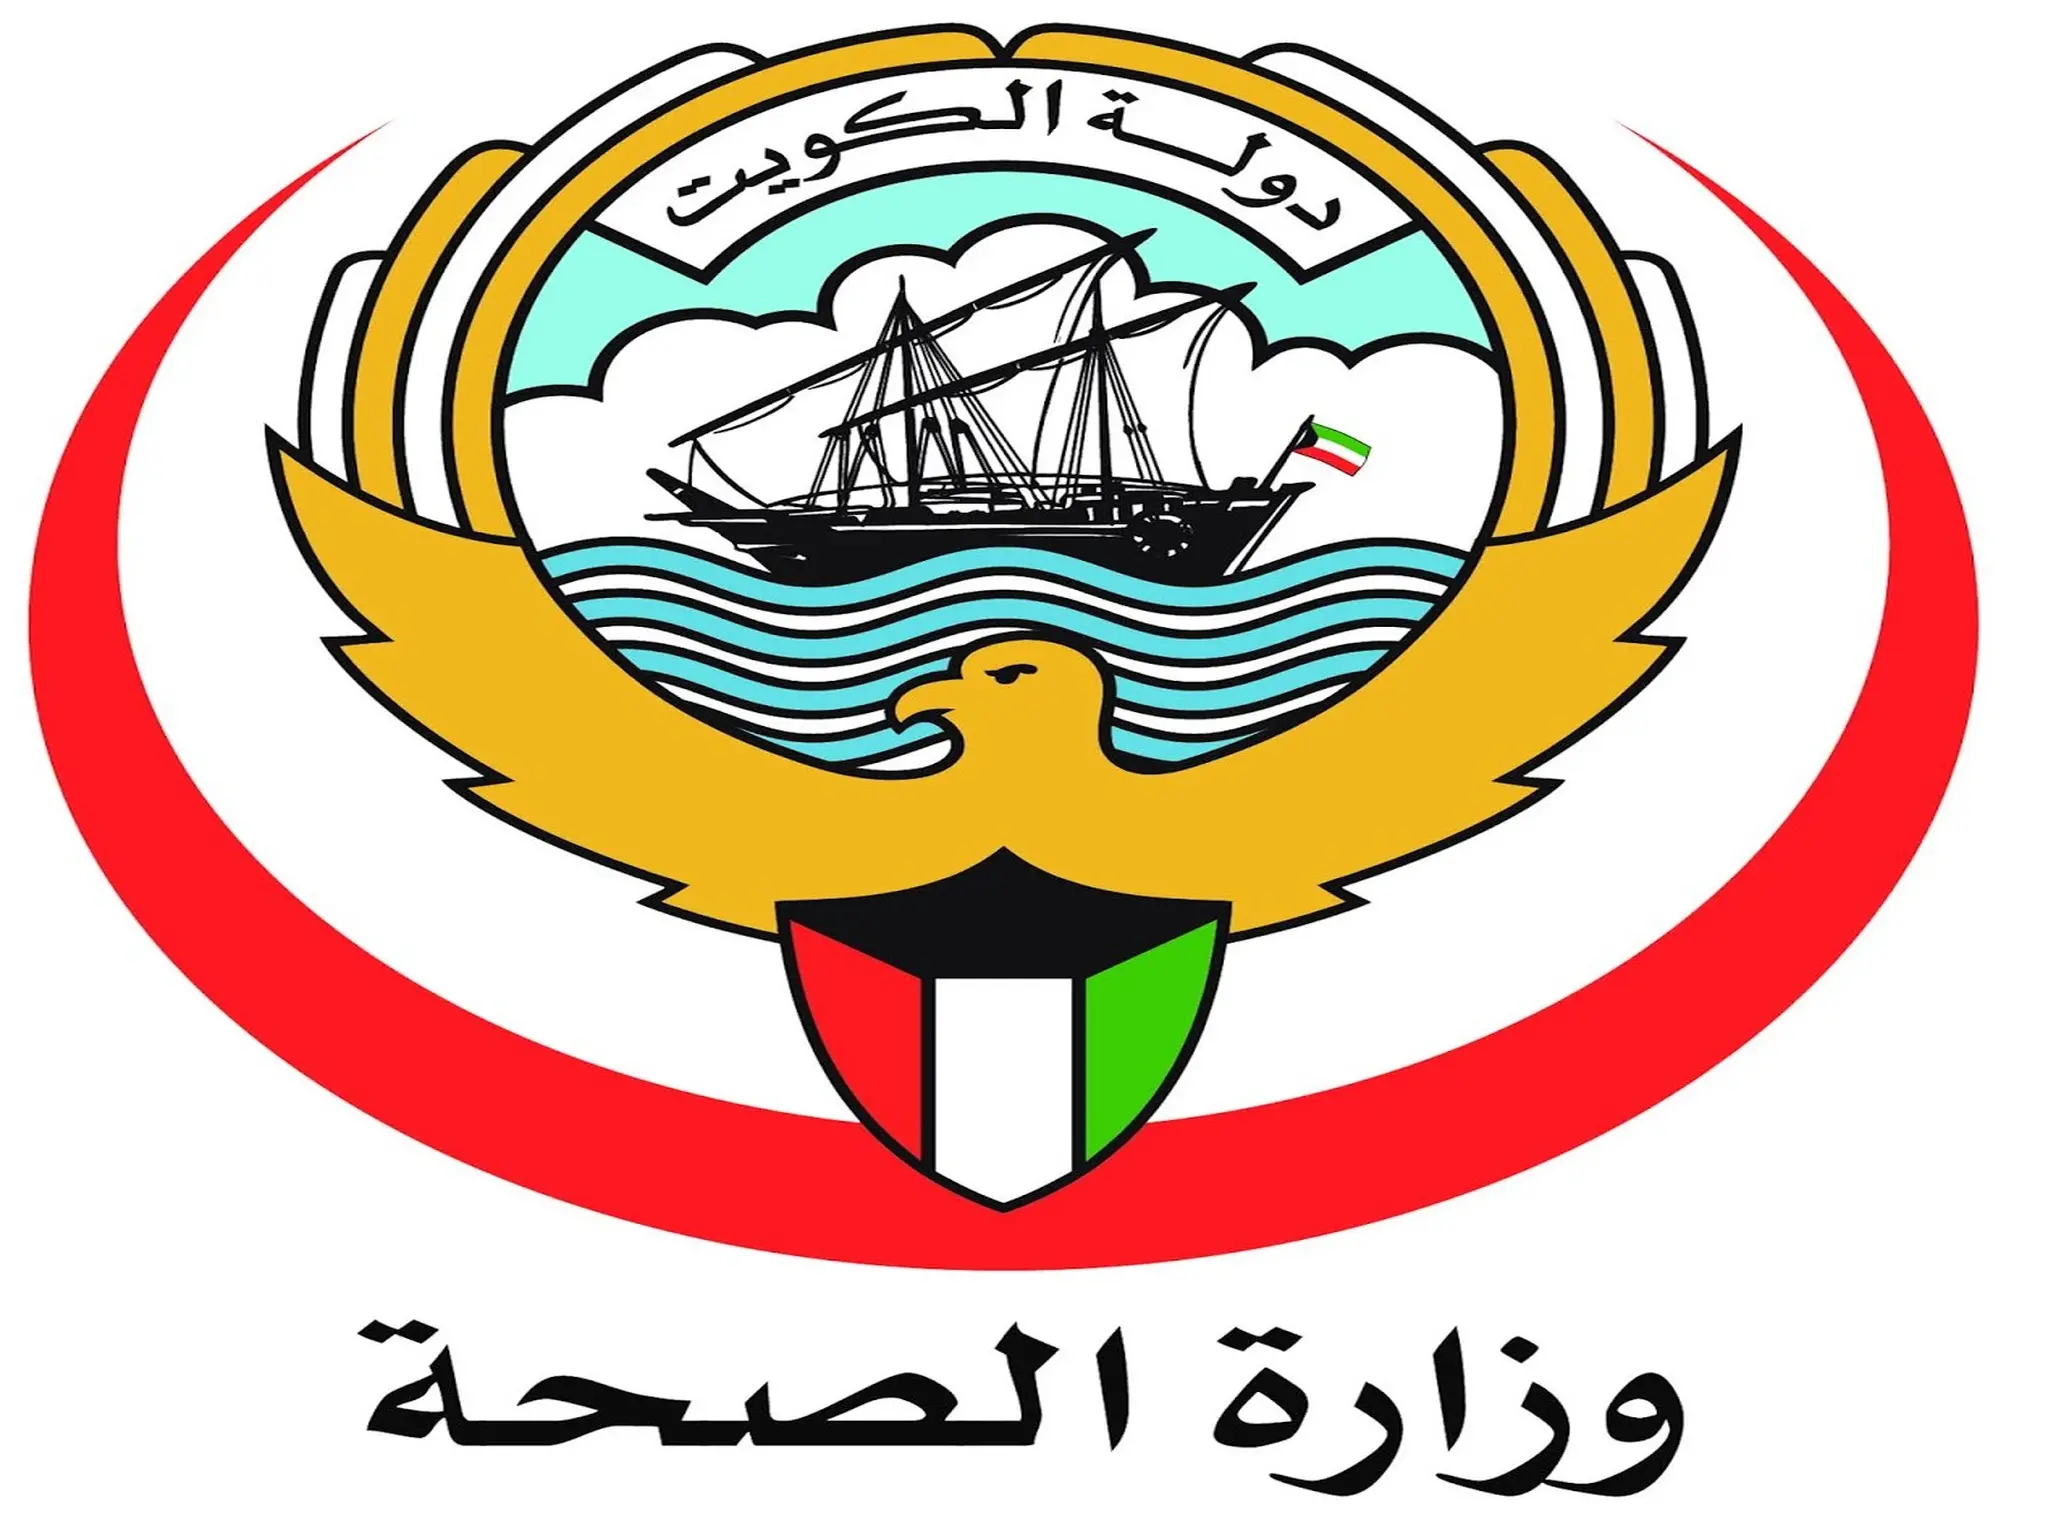 وزارة الصحة الكويتية تصدر بيانا يتعلق بعطلة رأس السنة